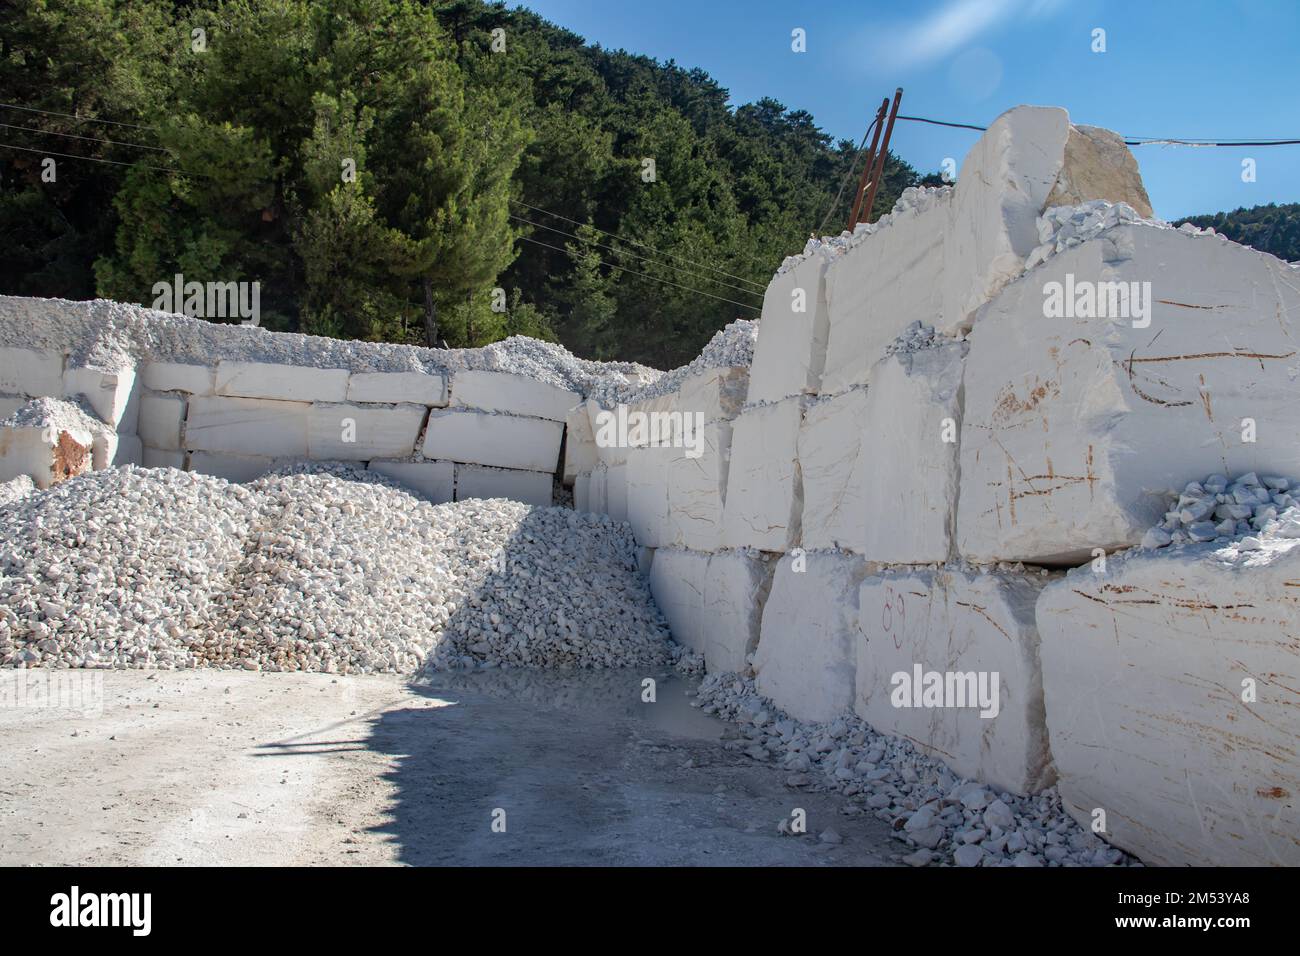 Pierre de marbre blanc en blocs, juste excavé de la mine avec des machines lourdes, prêt pour le traitement ultérieur jusqu'au produit final. Chaque bloc de pierre est de 5T. Banque D'Images